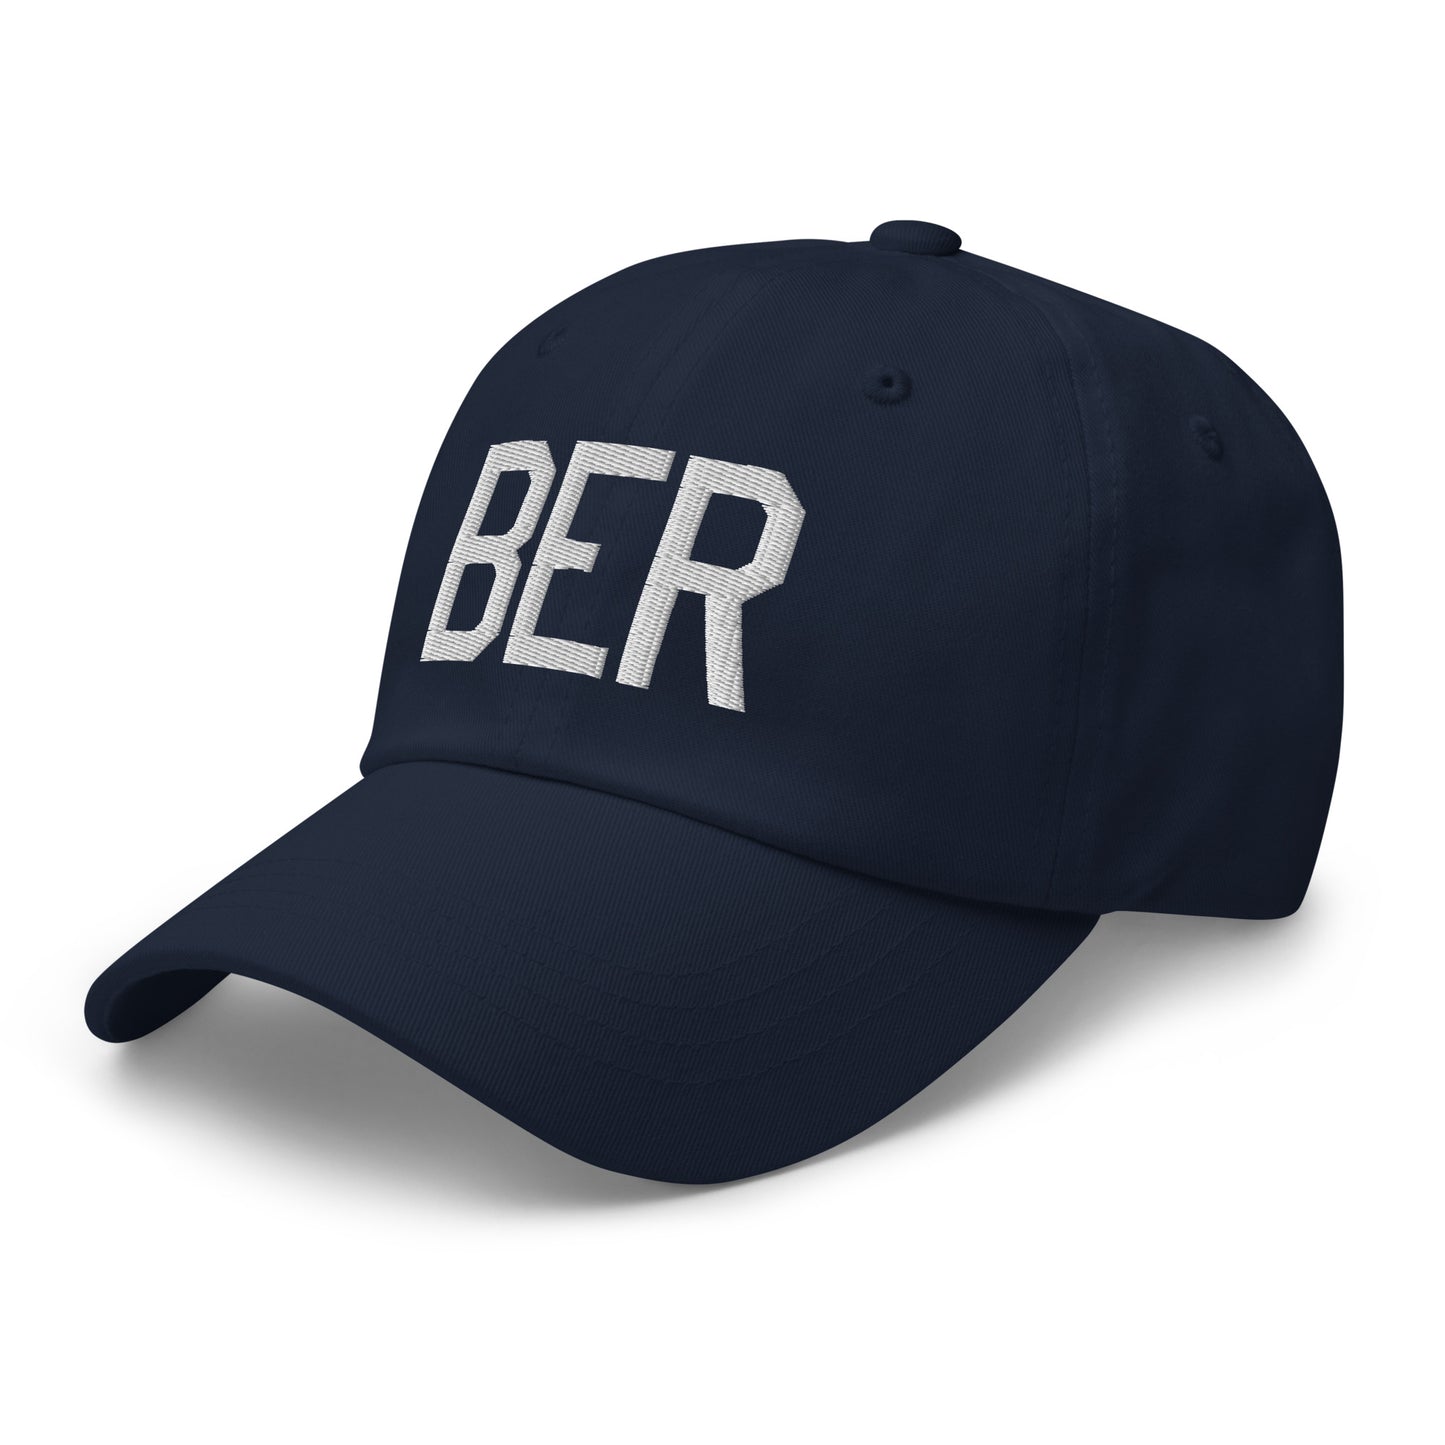 Airport Code Baseball Cap - White • BER Berlin • YHM Designs - Image 18